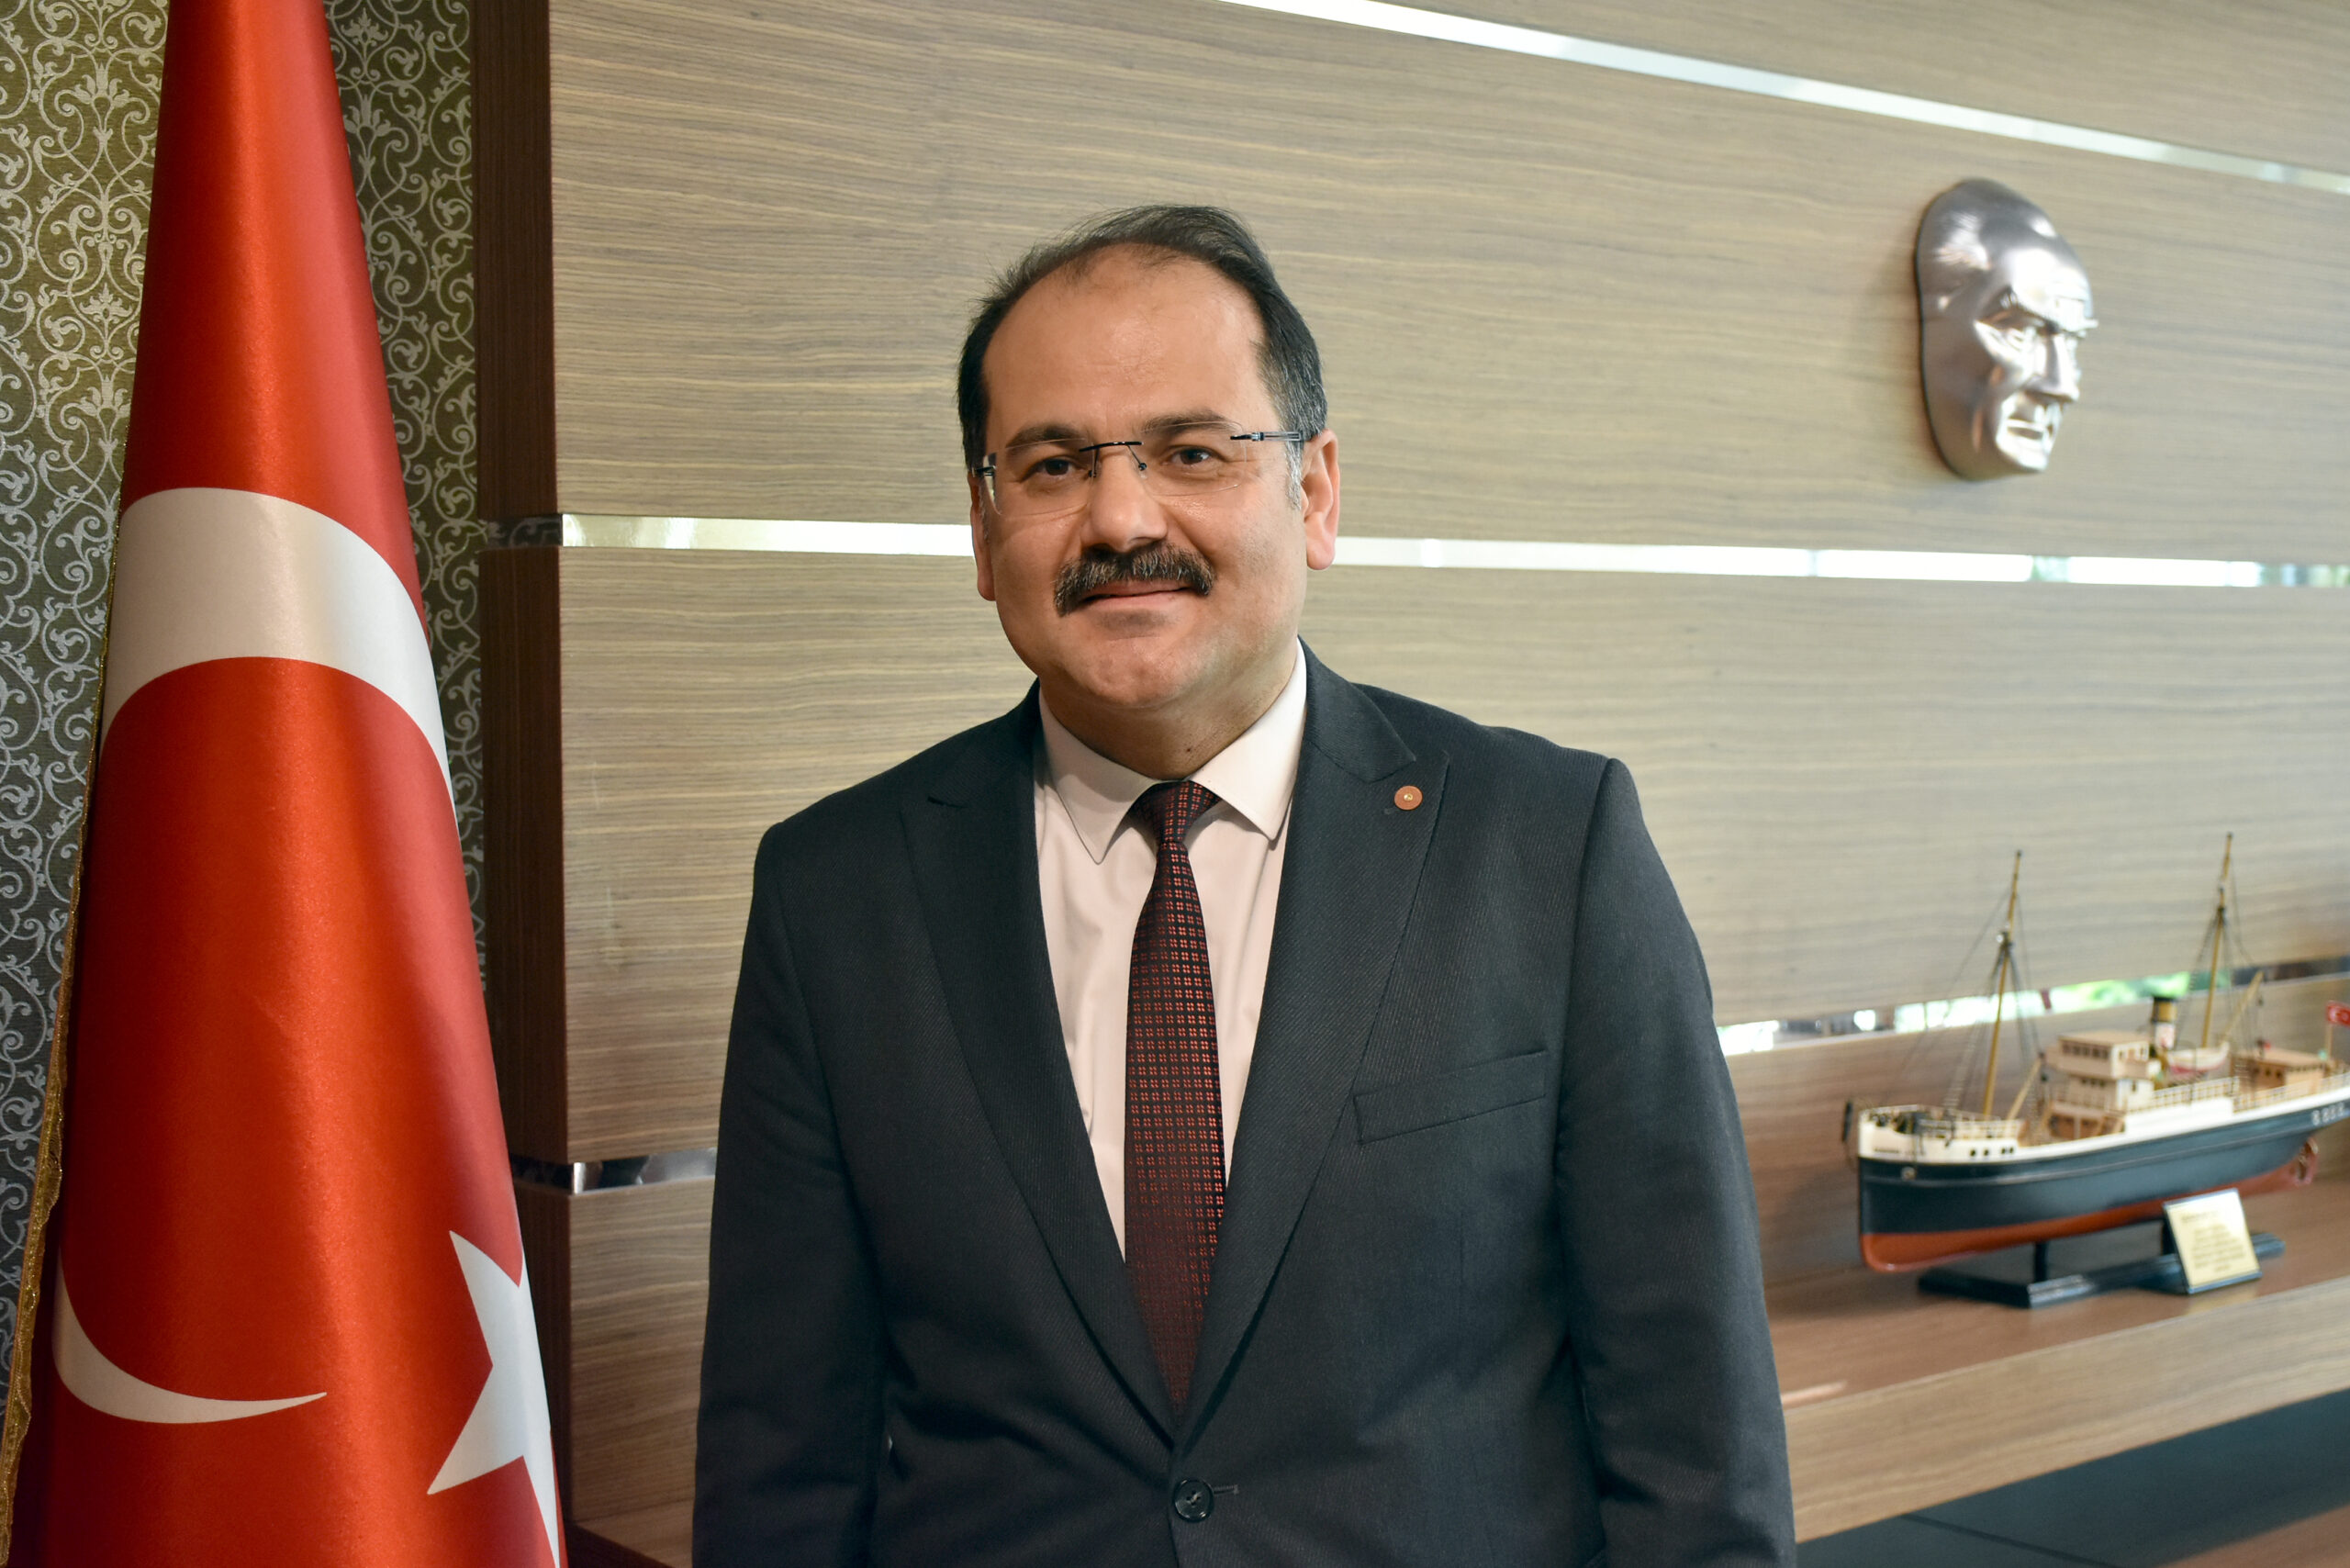 Samsun Adalet Komisyonu Başkanı Köseoğlu görevine başladı